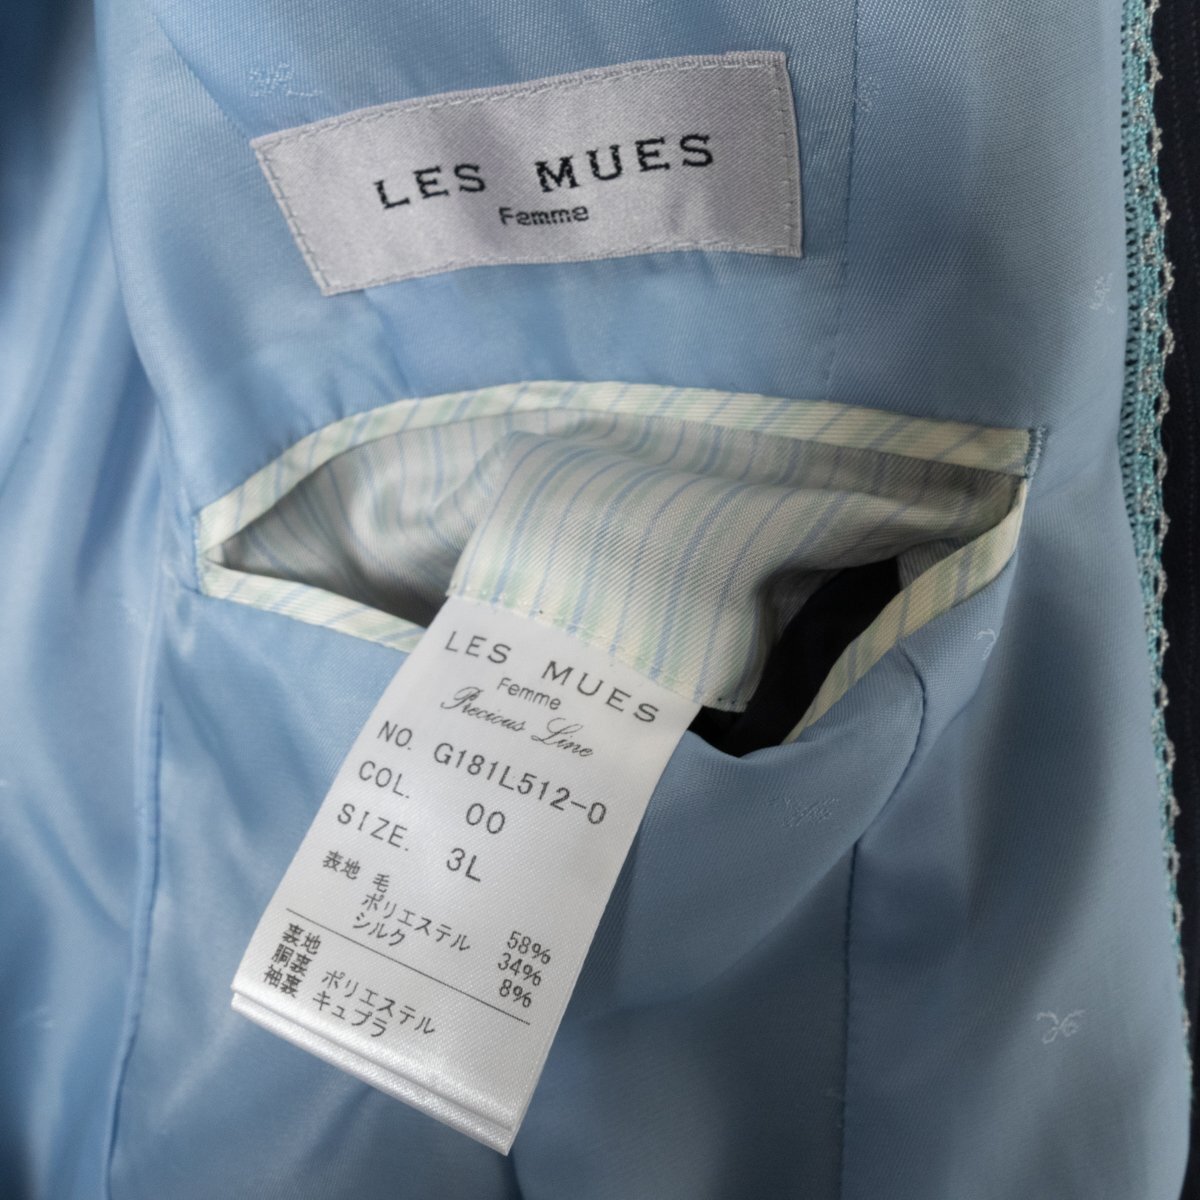 LES MUES Femmere Mu выставить костюм полоса рисунок жакет 3L узкая юбка LL шерсть темно-синий темно-синий красивый . формальный 